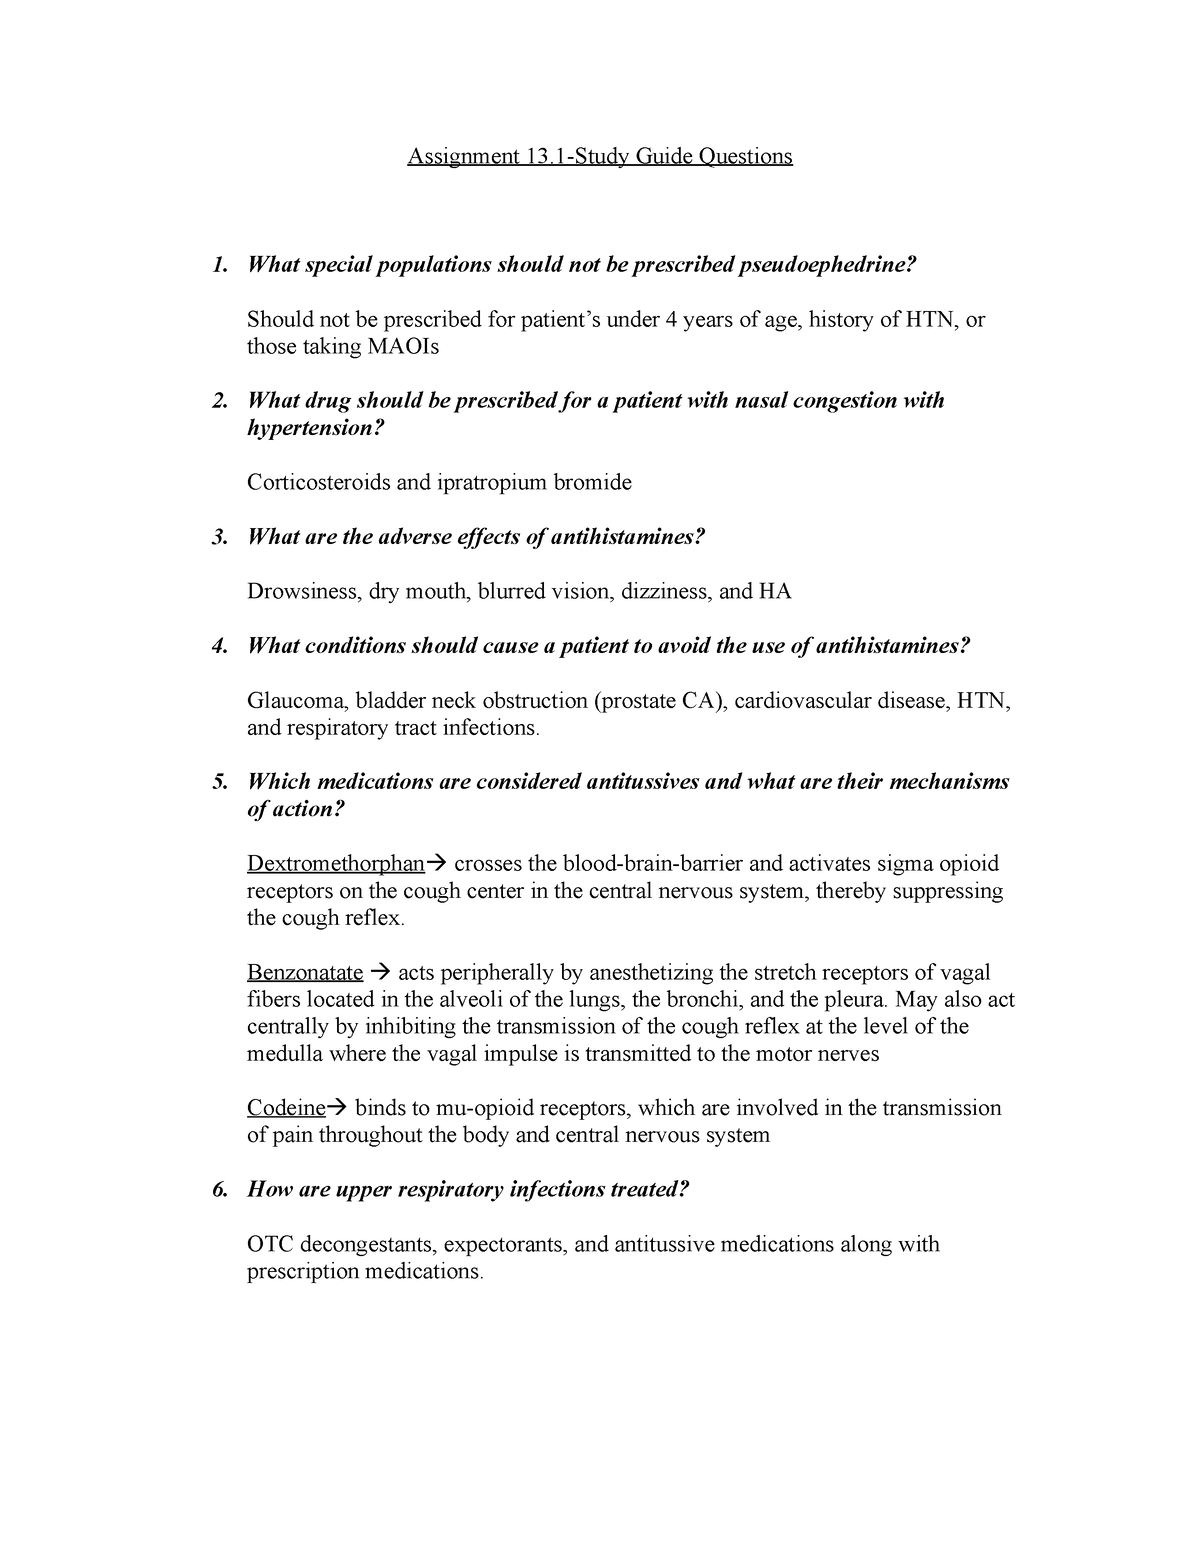 Assignment 13.1 study guide - Assignment 13-Study Guide Questions 1 ...